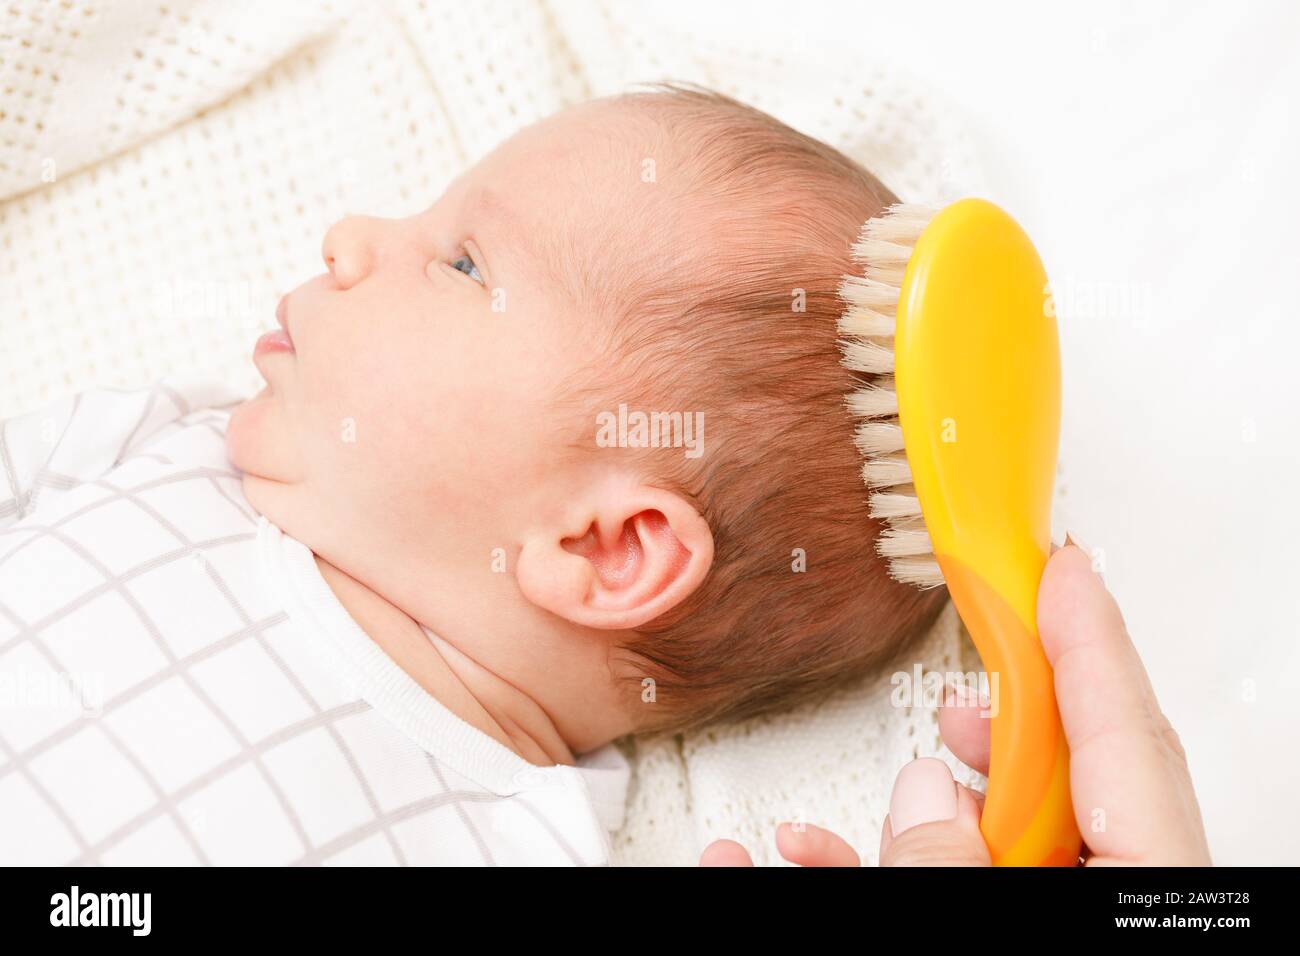 Cepillo para el pelo del bebé, cepillo para la cuna, peine para el pelo del  bebé, cepillo de pelo de bebé y juego de peine para recién nacidos y niños